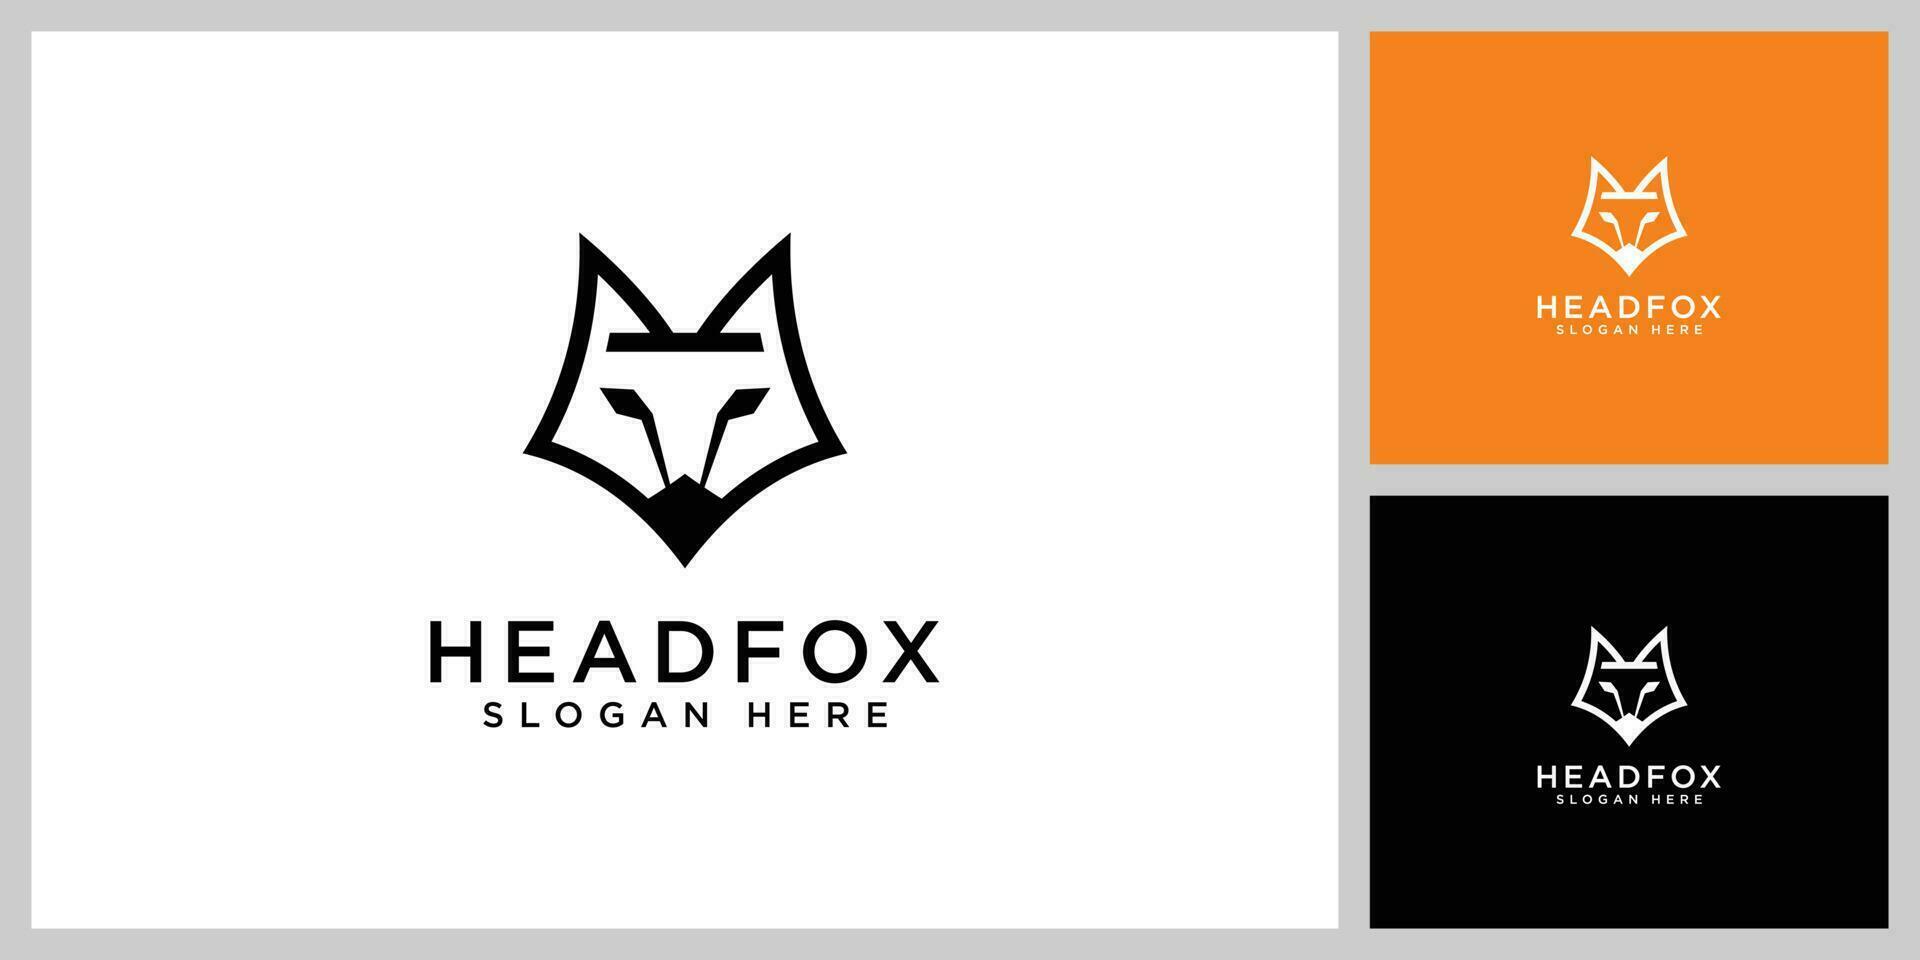 conception de style de ligne vectorielle logo tête de renard vecteur